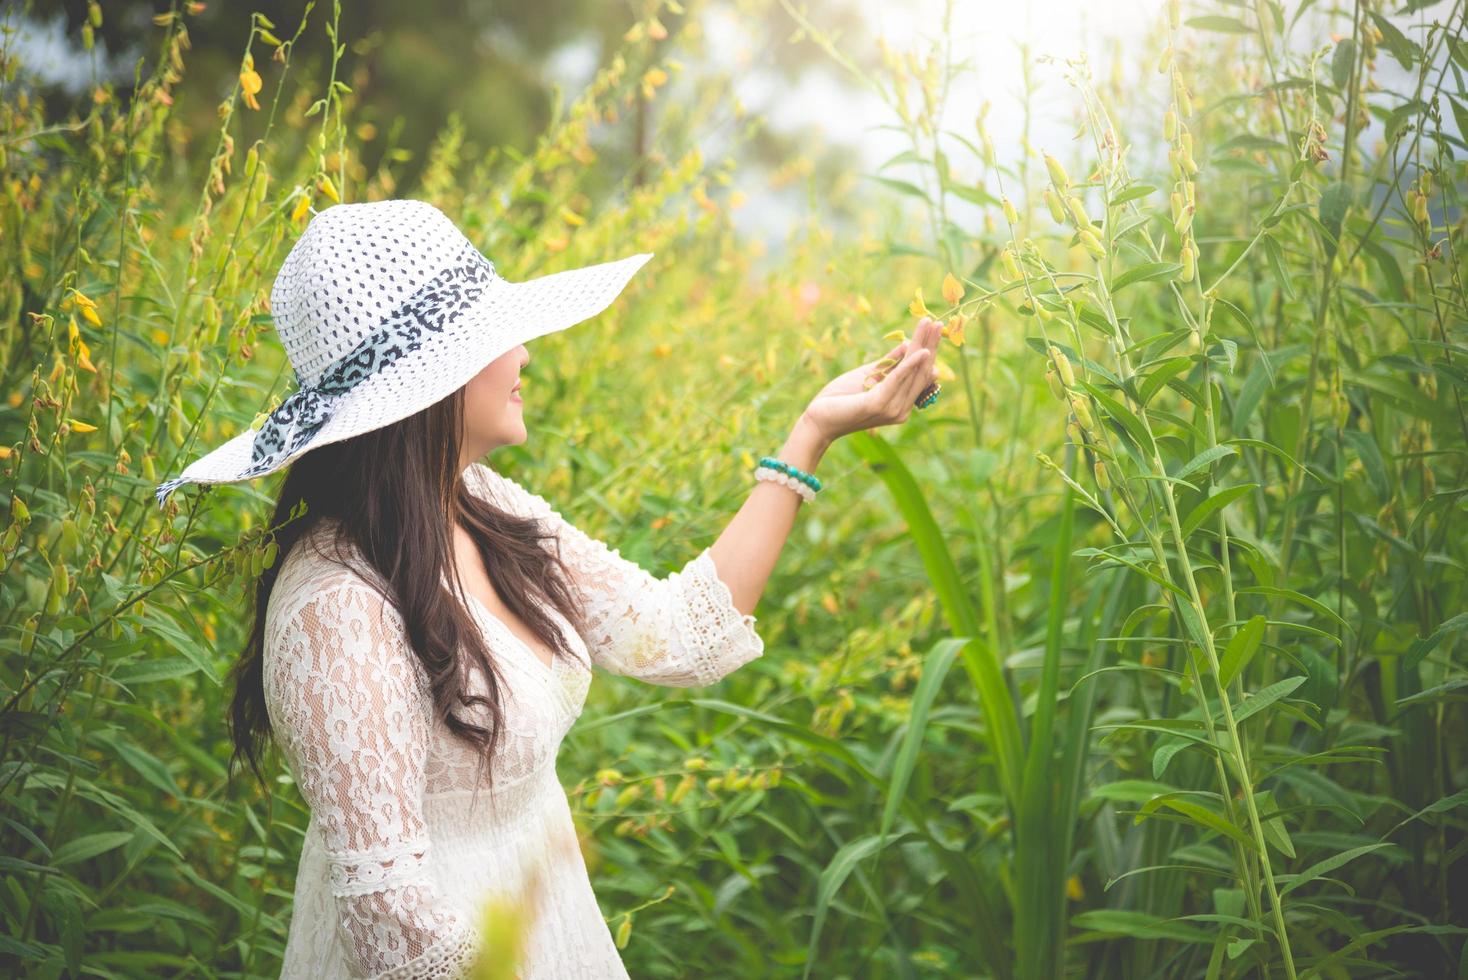 schoonheid Aziatische vrouw in witte jurk en vleugel hoed wandelen in koolzaad bloem veld achtergrond. ontspanning en reizen concept. wellness gelukkig leven van meisje op vakantie. natuur en mensen levensstijl foto